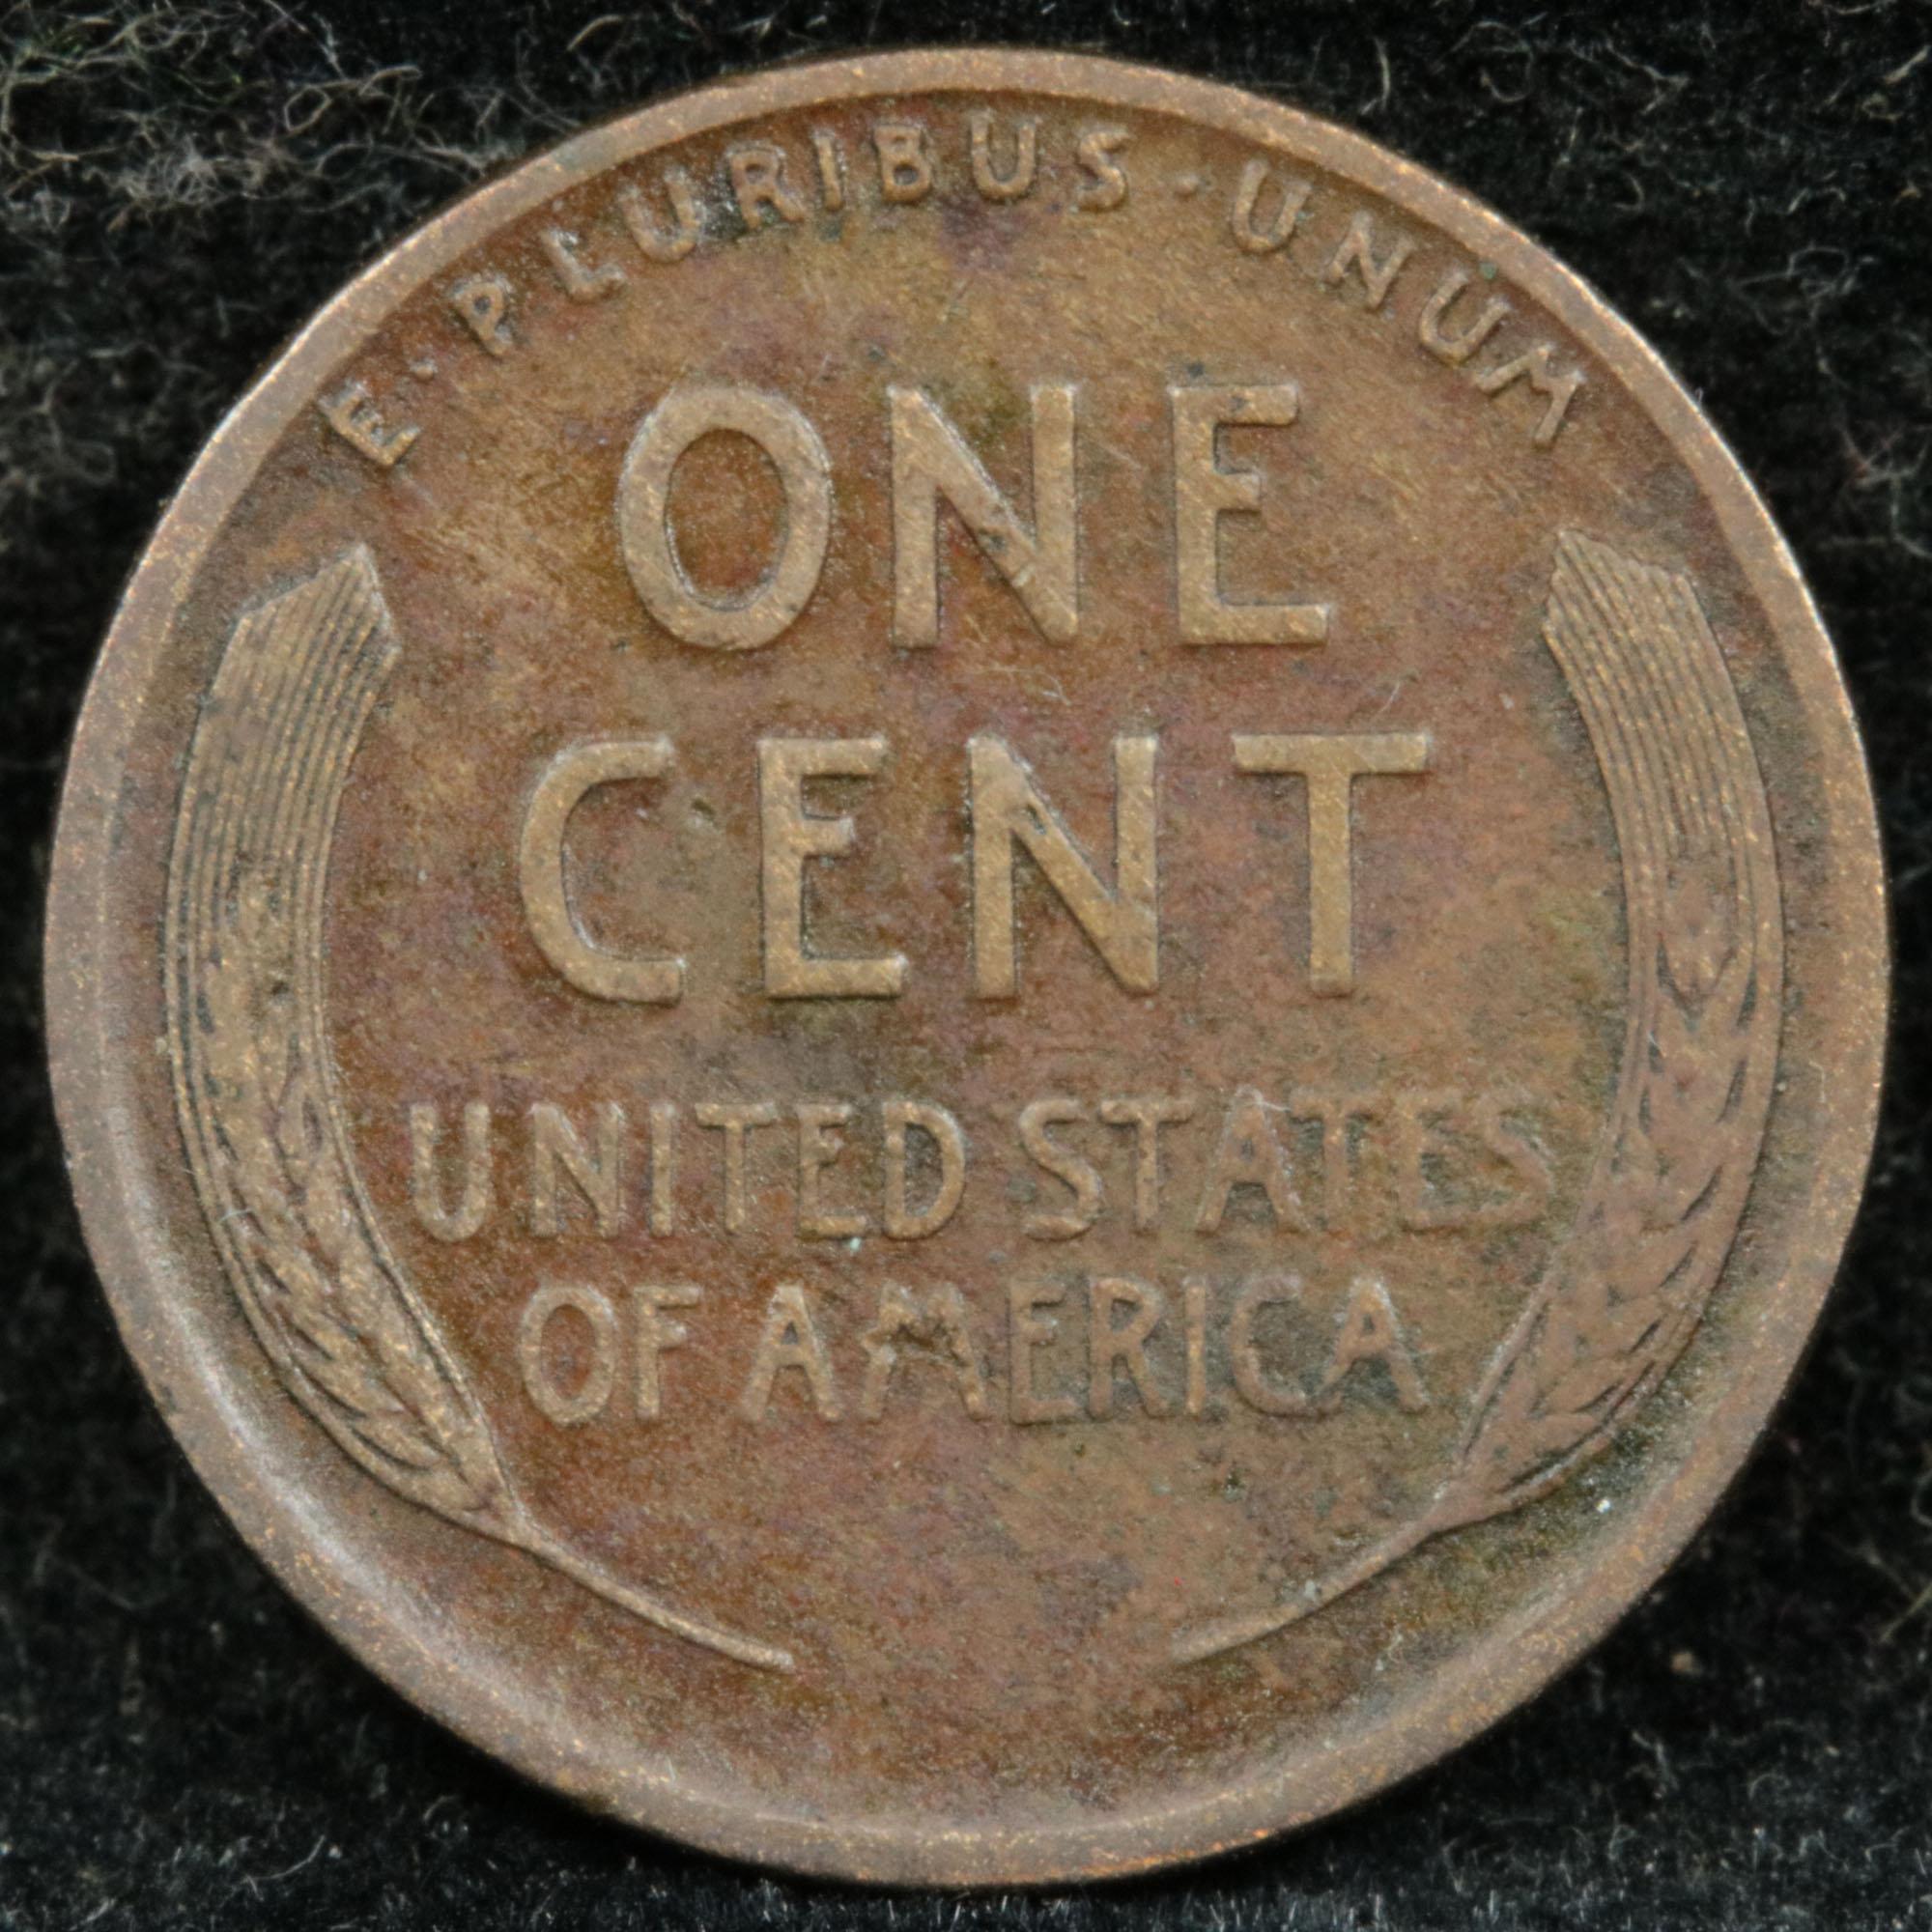 1910-s Lincoln Cent 1c Grades vf++